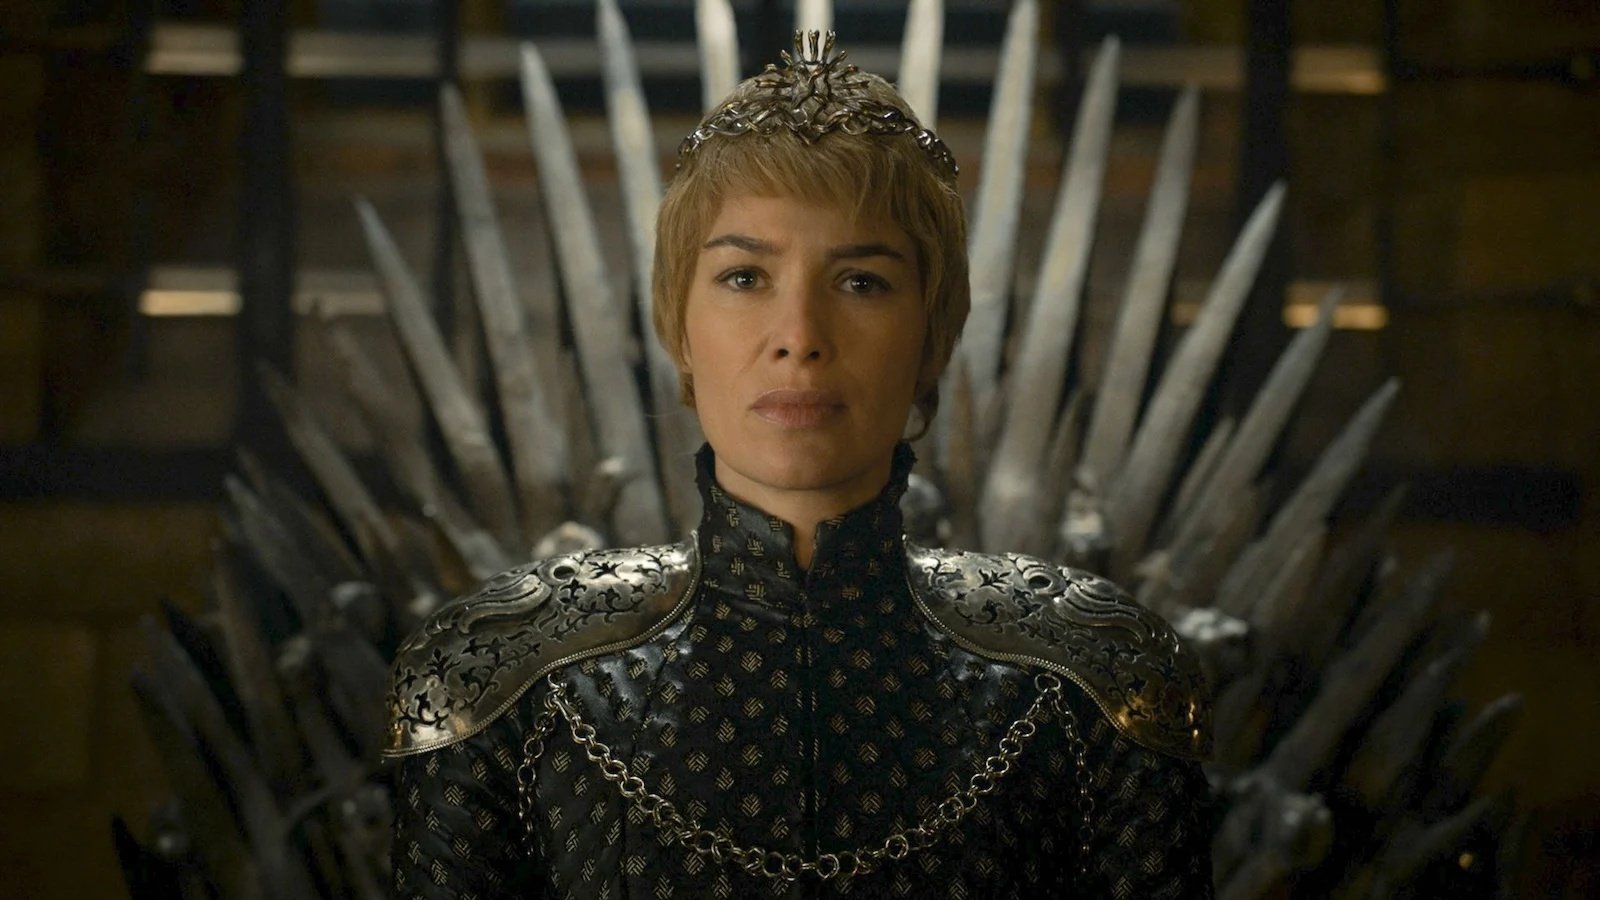 Immagine tratta da una scena de Il trono di spade con Cersei Lannister.